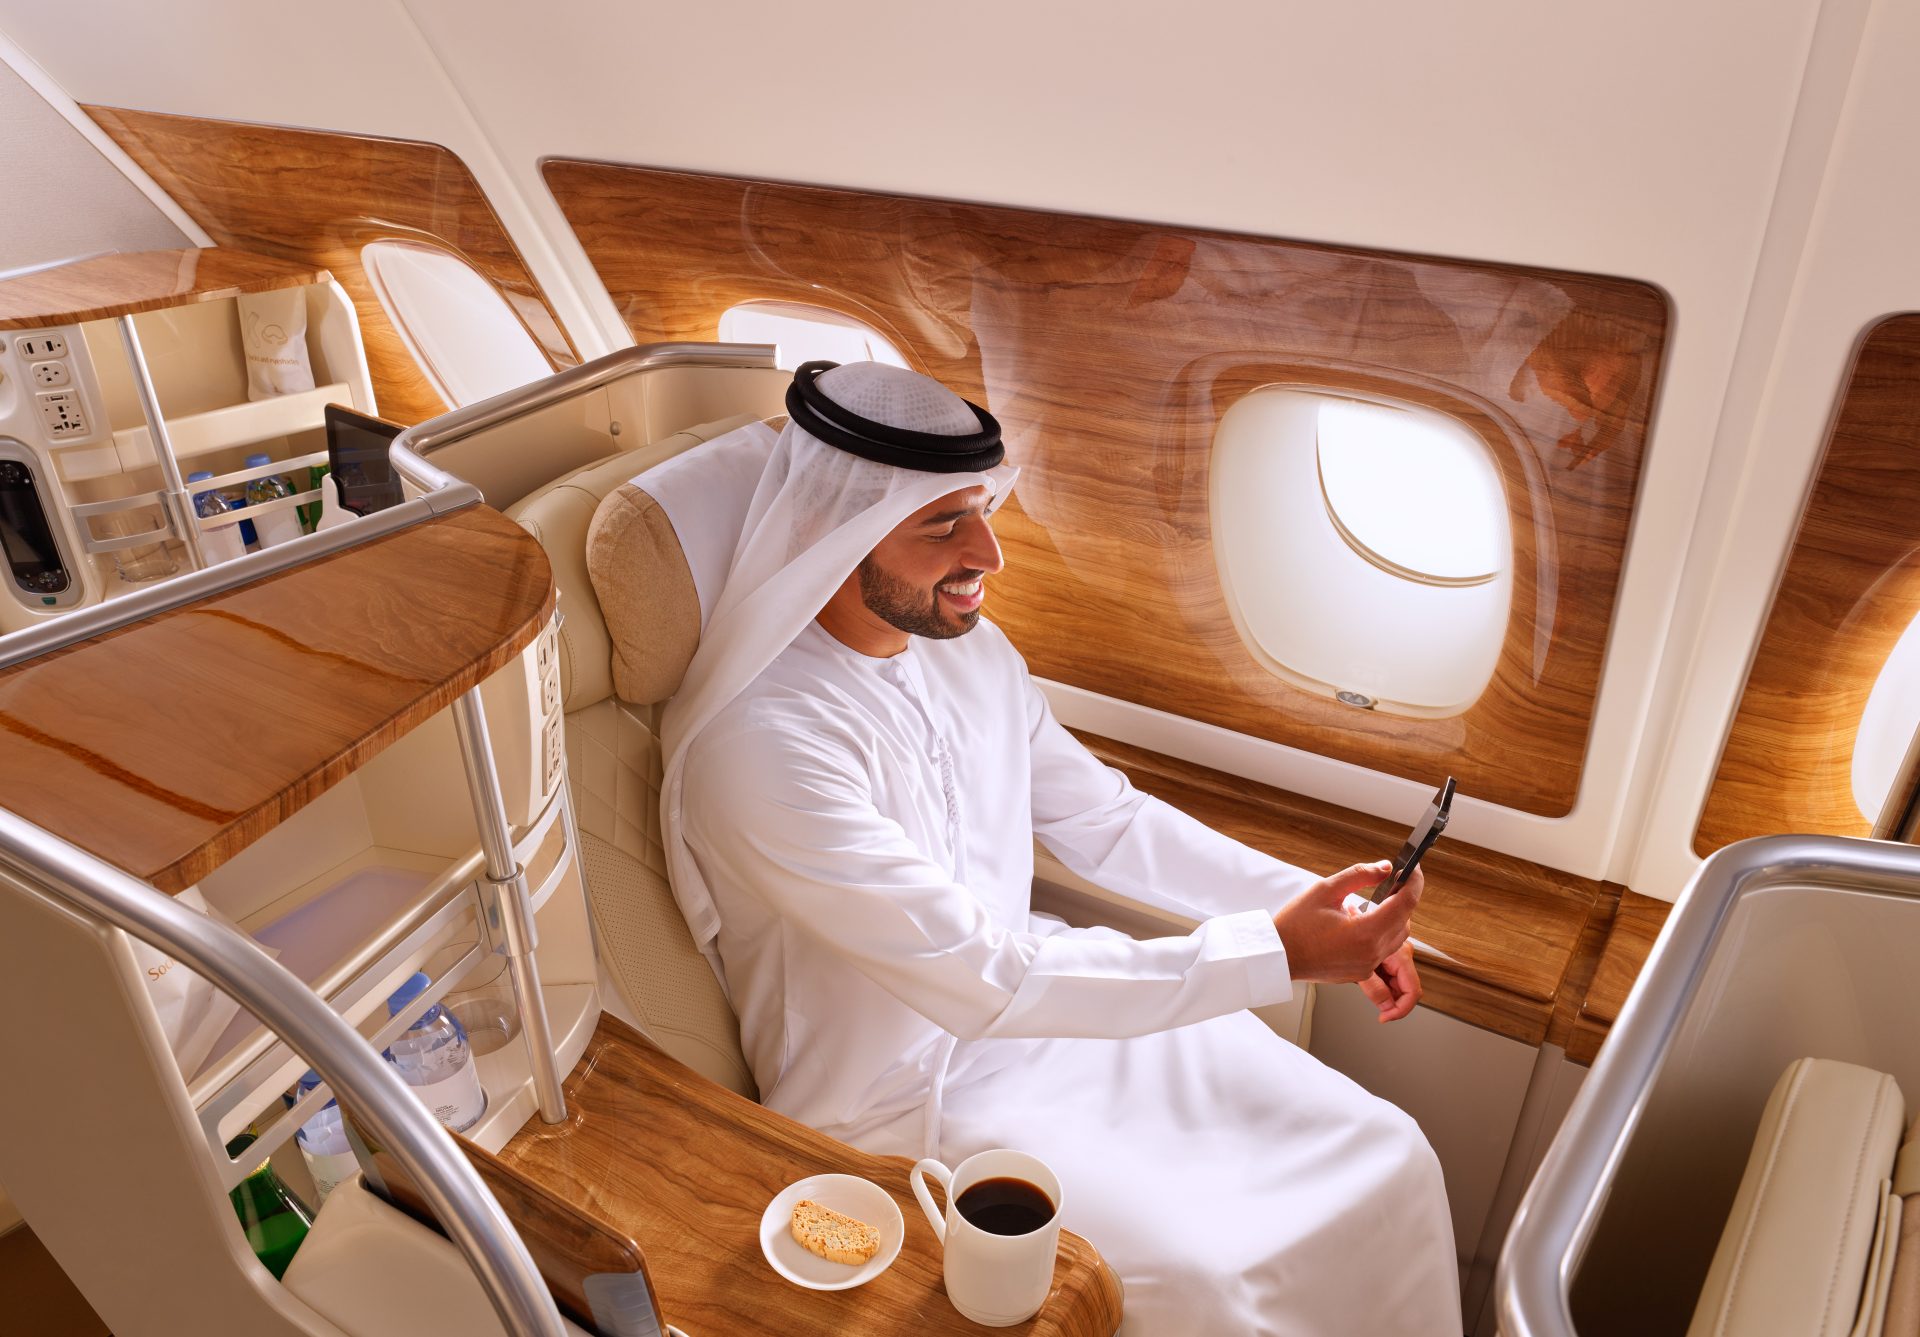 Bezpłatne WiFi na pokładzie linii lotniczych (źródło: Emirates)